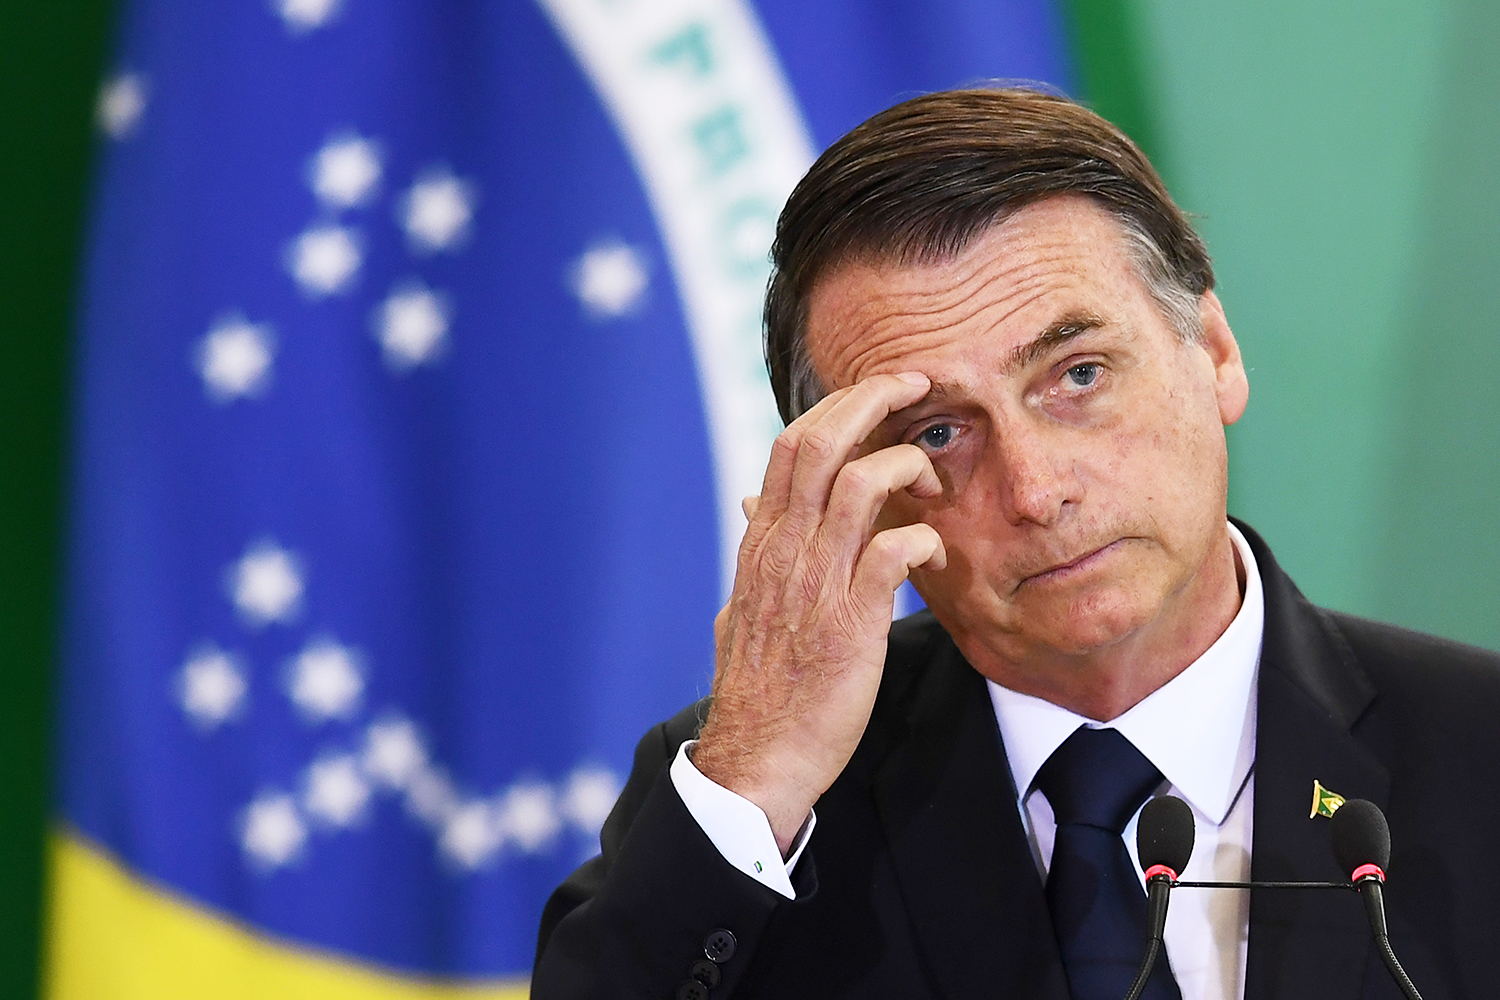 Bolsonaro alvo de buscas pela Polícia Federal